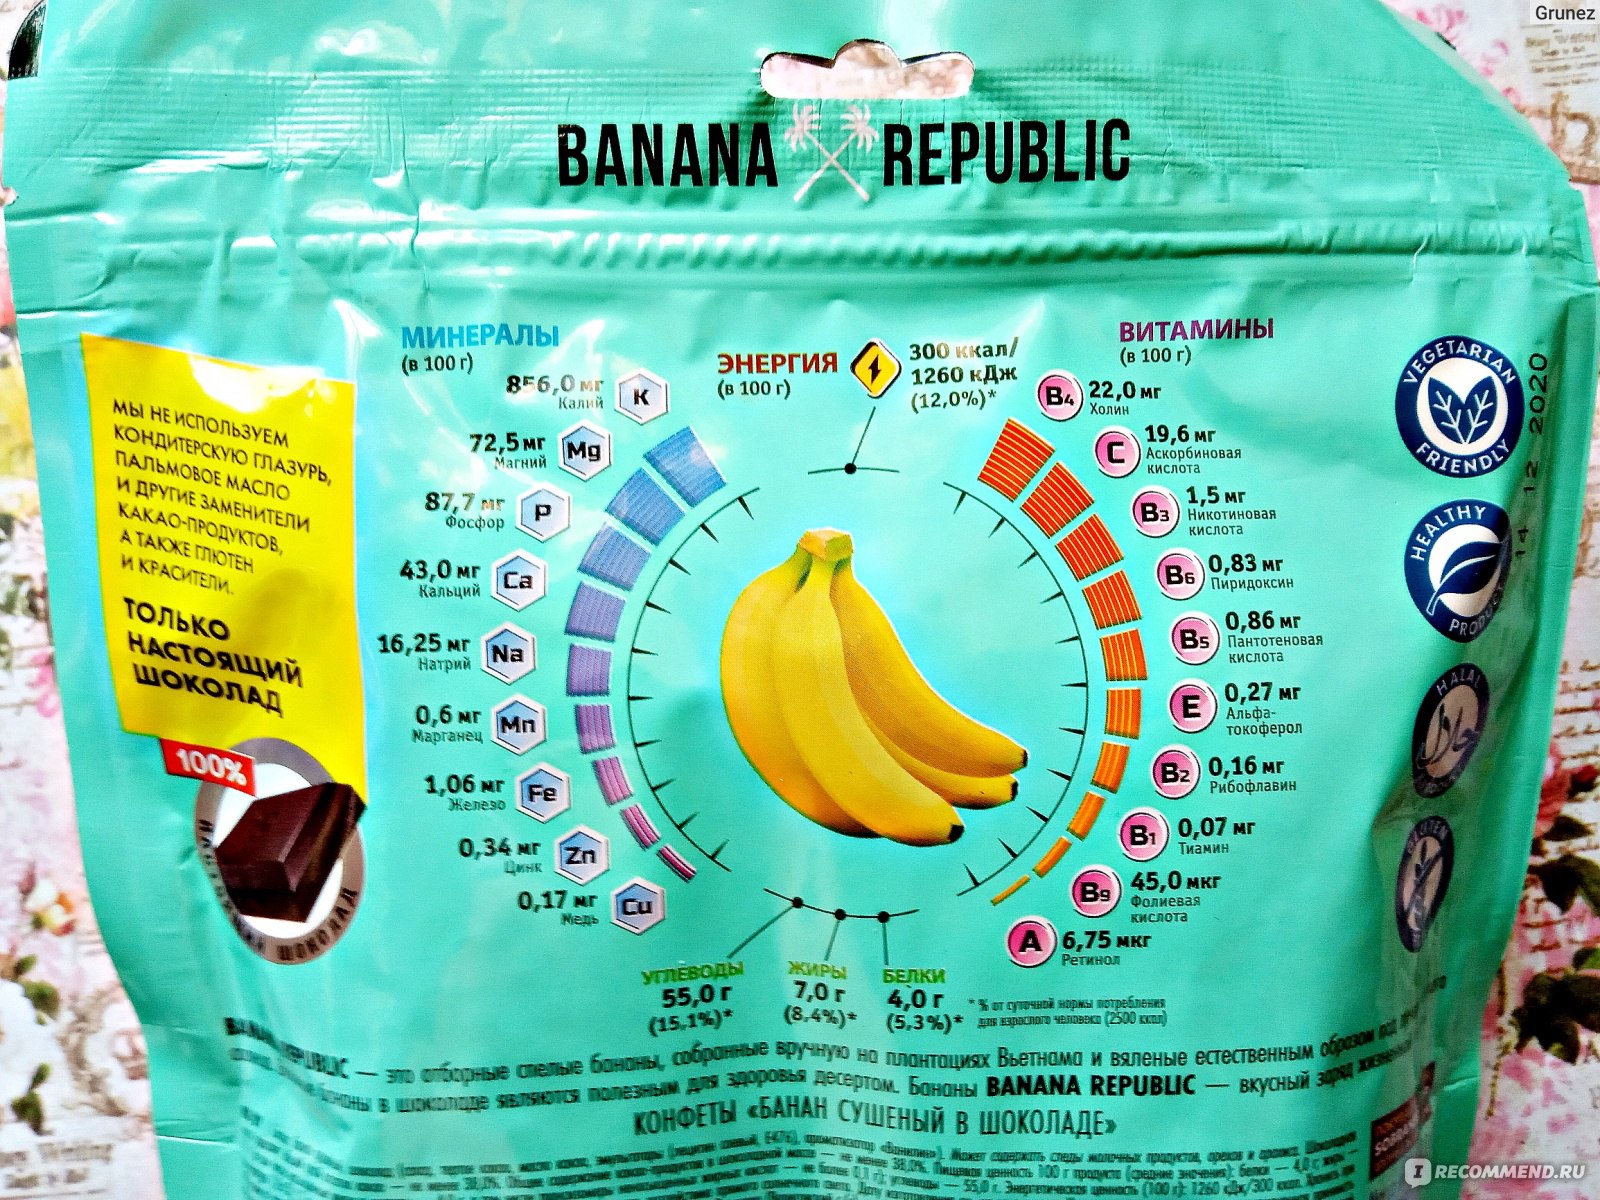 Сушеные бананы BANANA REPUBLIC в шоколаде фото